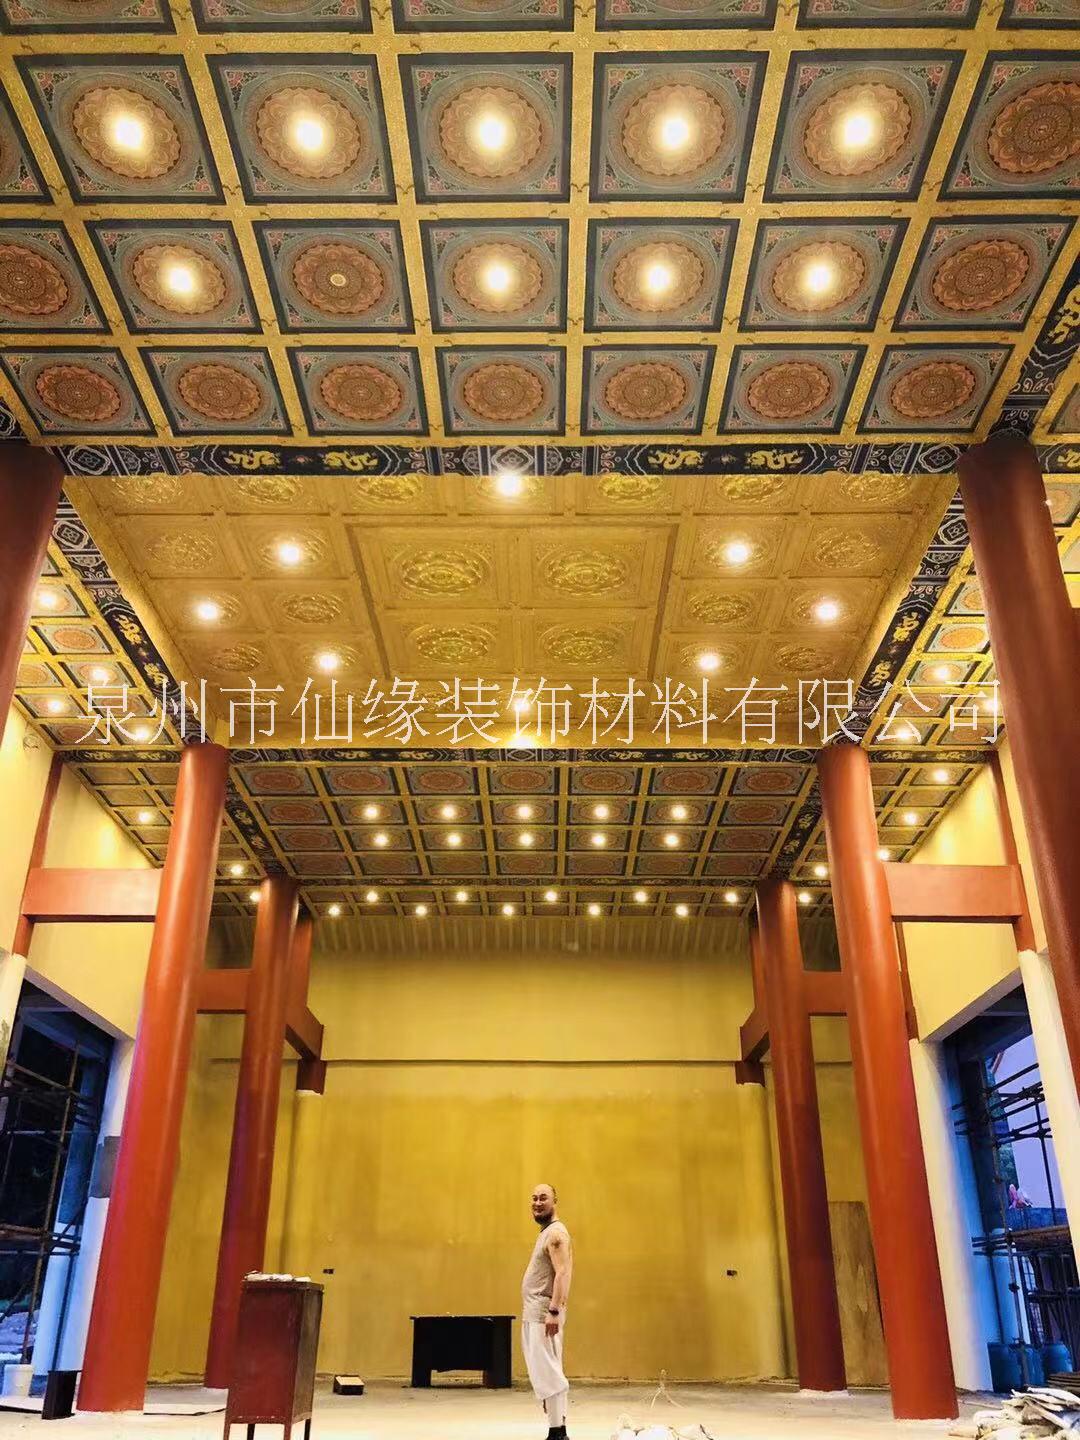 仙缘寺庙古建筑室内天花板暗藏灯光图片